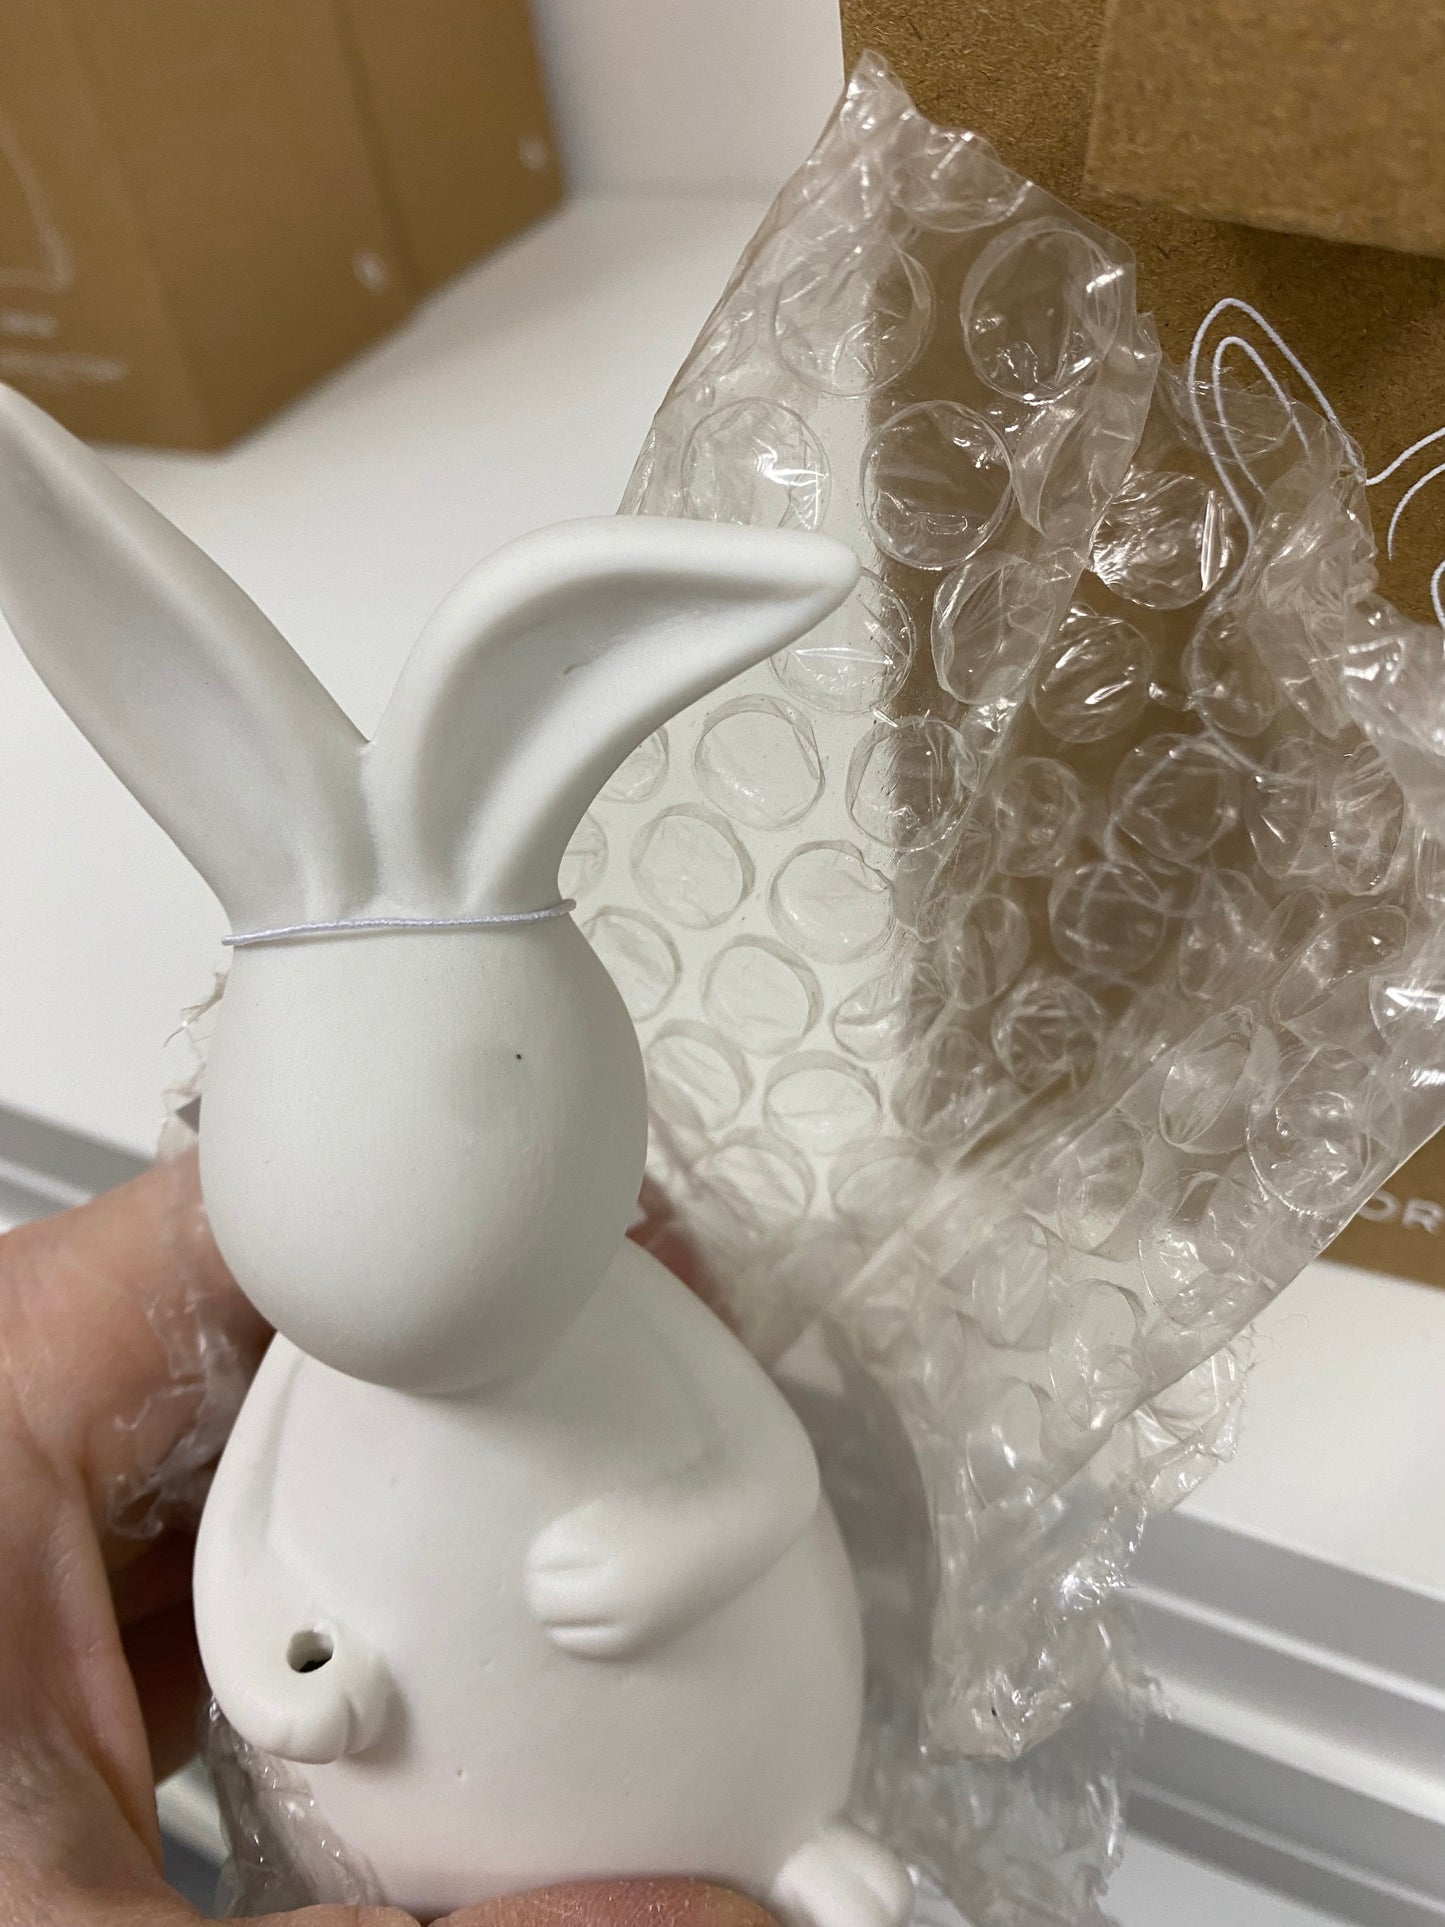 Amilia white Bunny - 3 sizes - imperfect